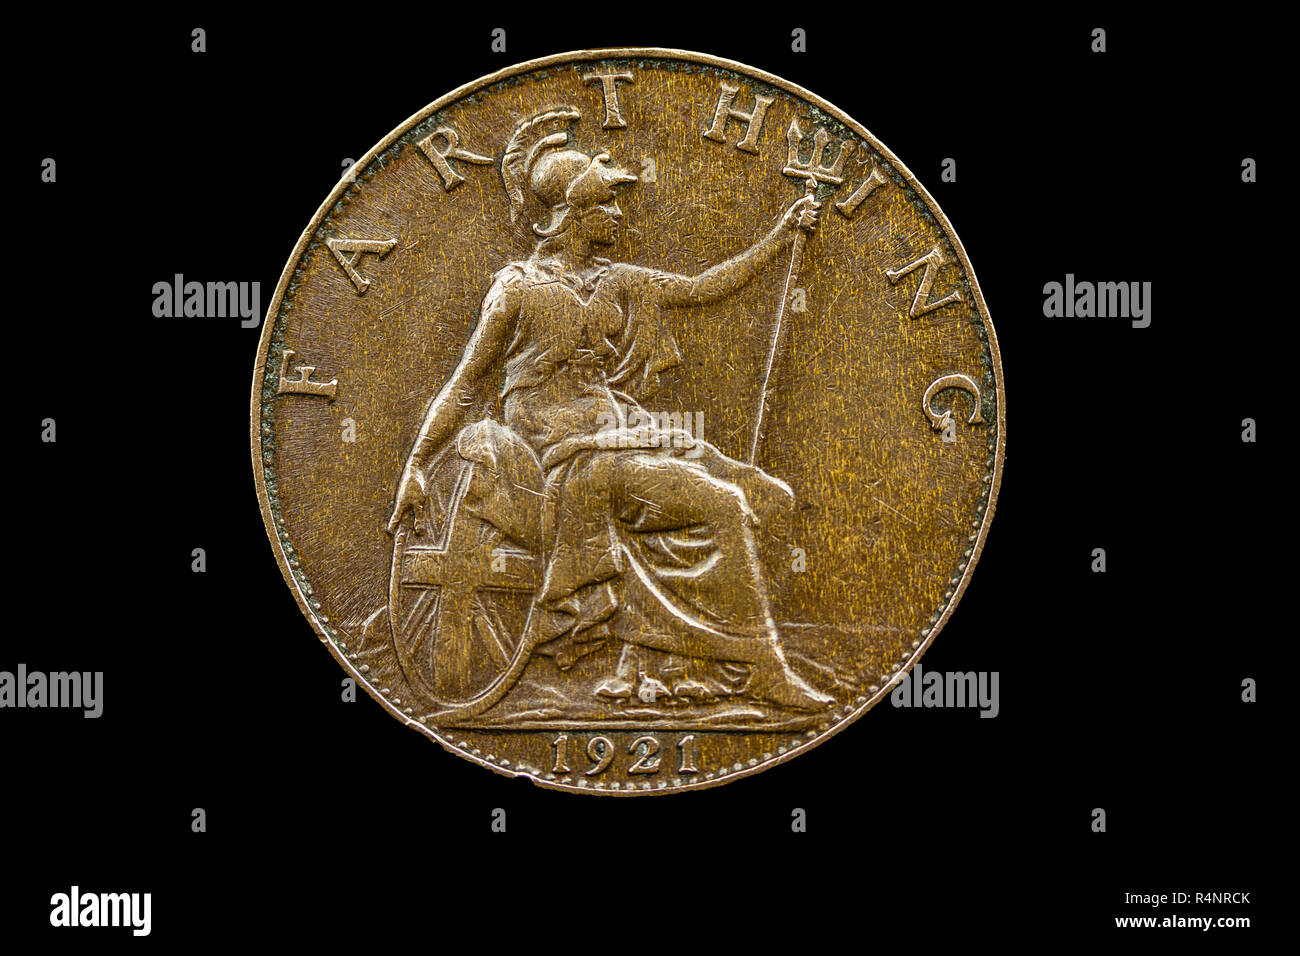 UK 1921 Farthing coin, mostrando el reverso de Britannia sentado, con un casco, sosteniendo un tridente, mano apoyada en un escudo, con la fecha de 1921 Foto de stock